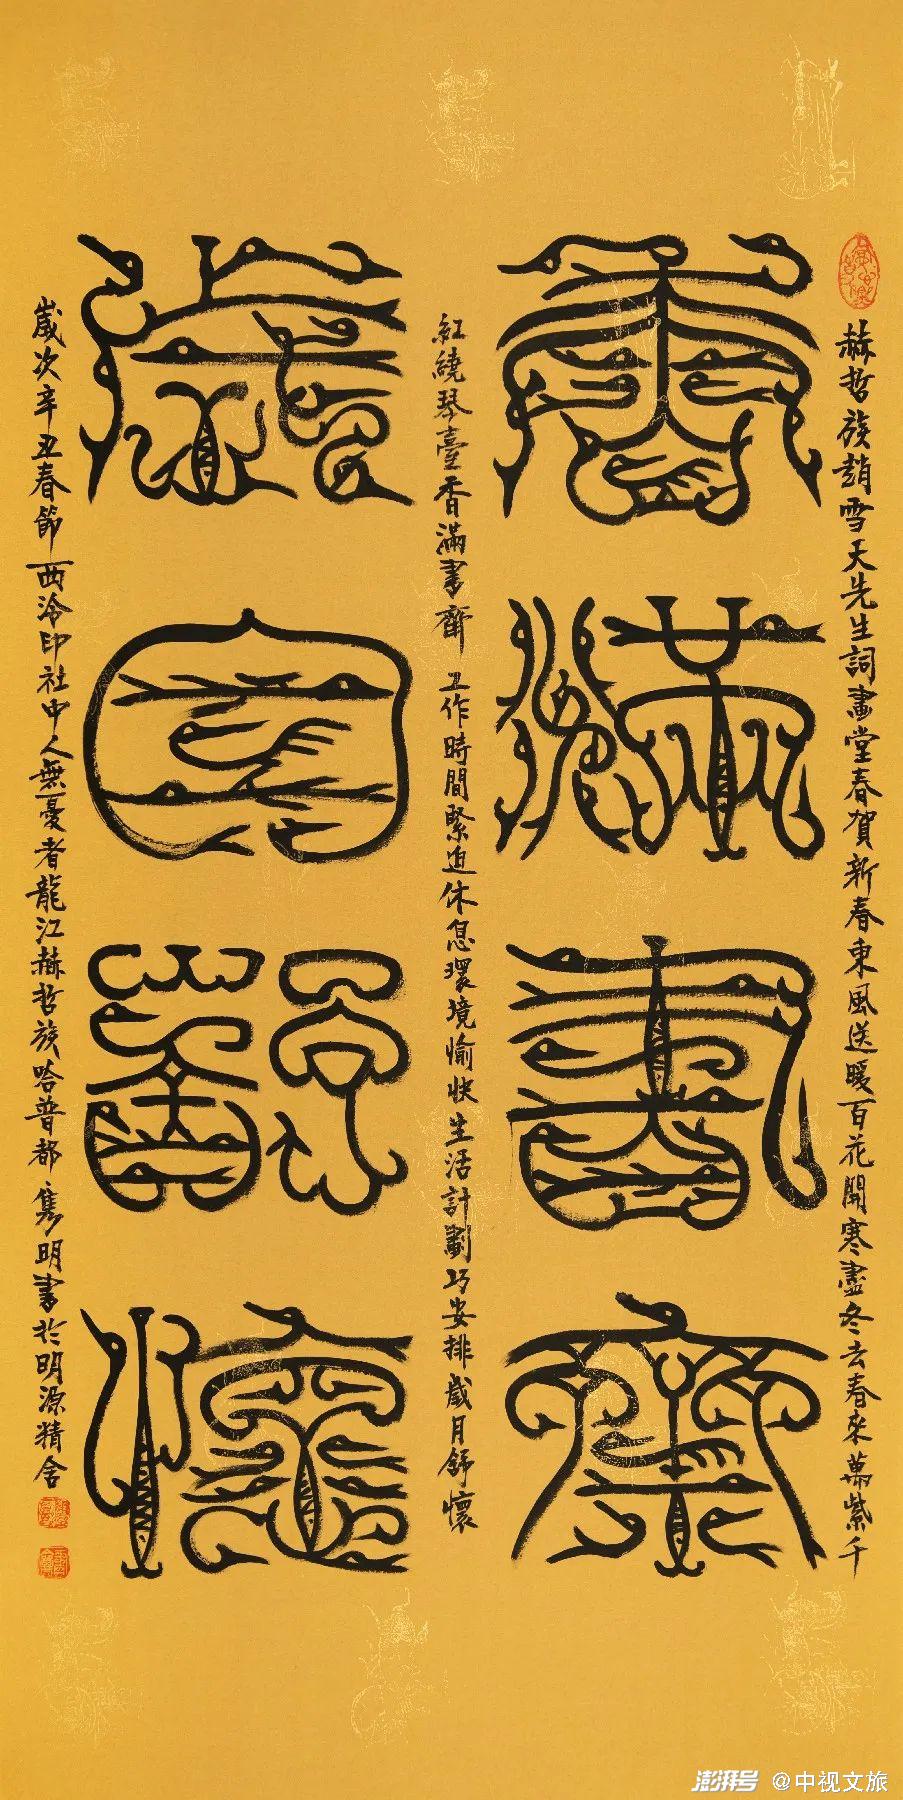 香满书斋 岁月书怀鸟蟲篆文 139cm×70cm鸟虫篆称鸟书或鸟虫书,是先秦